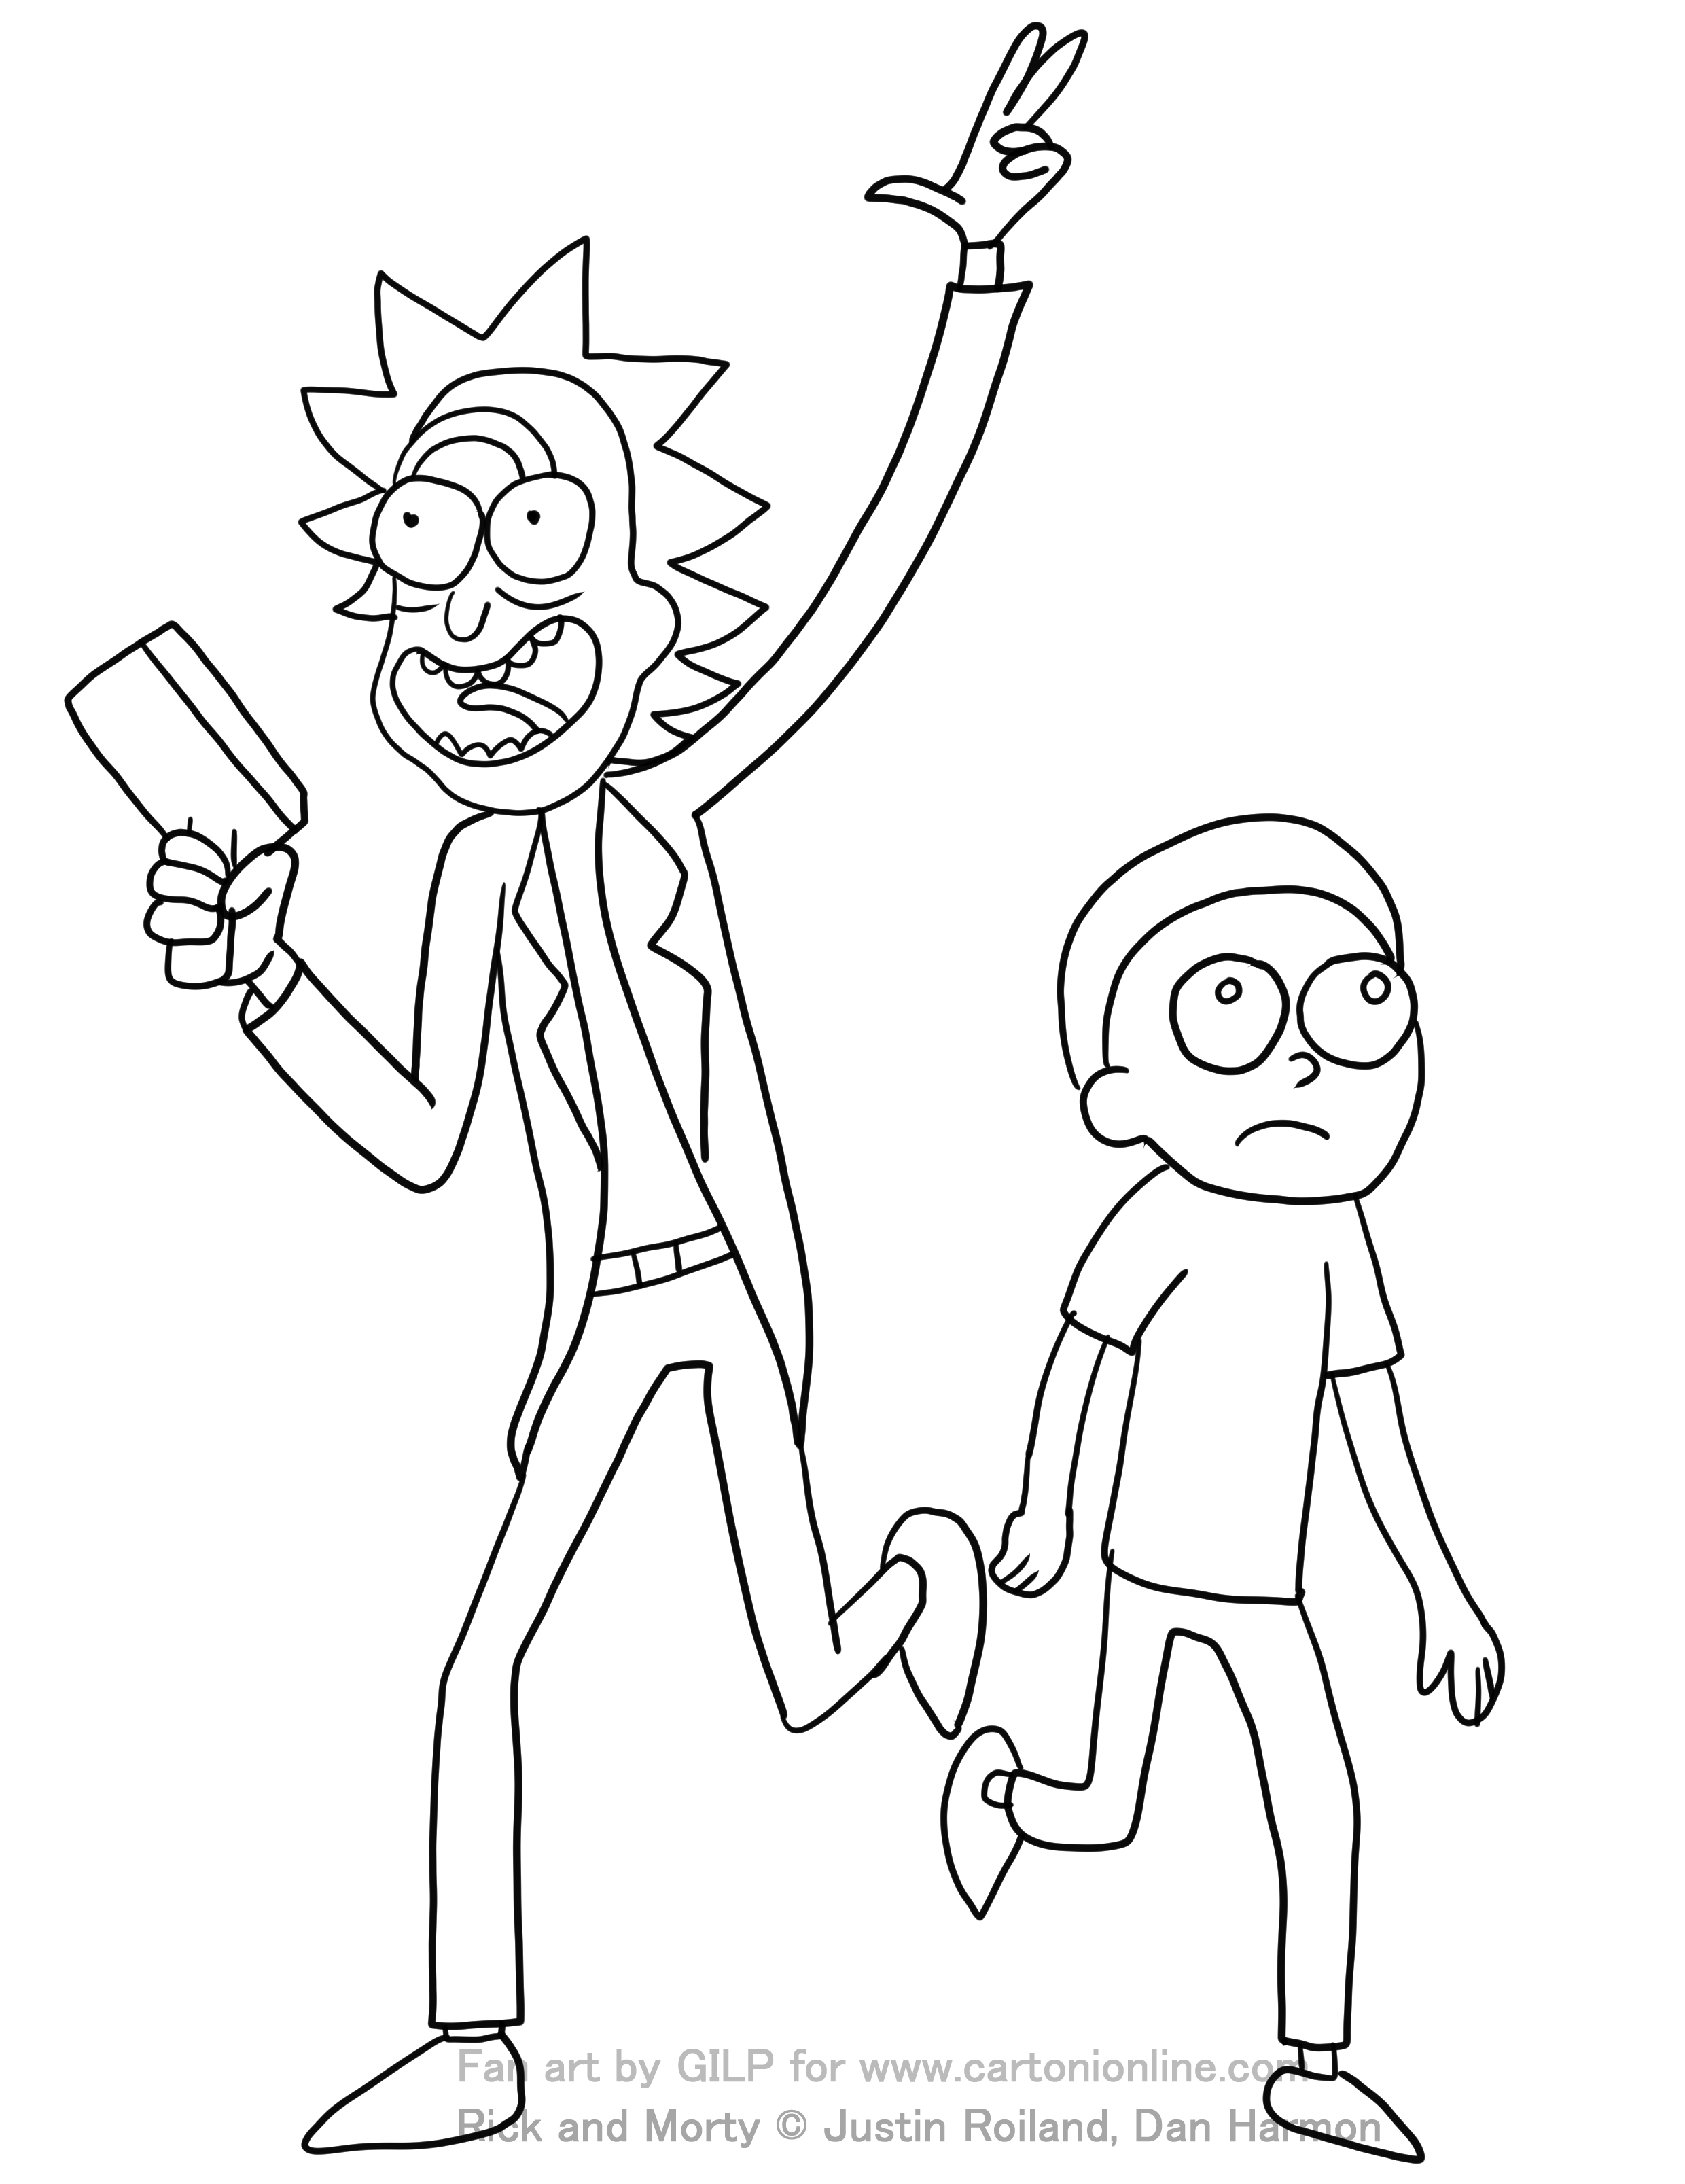 Rick et Morty 02 de Rick et Morty à imprimer et colorier